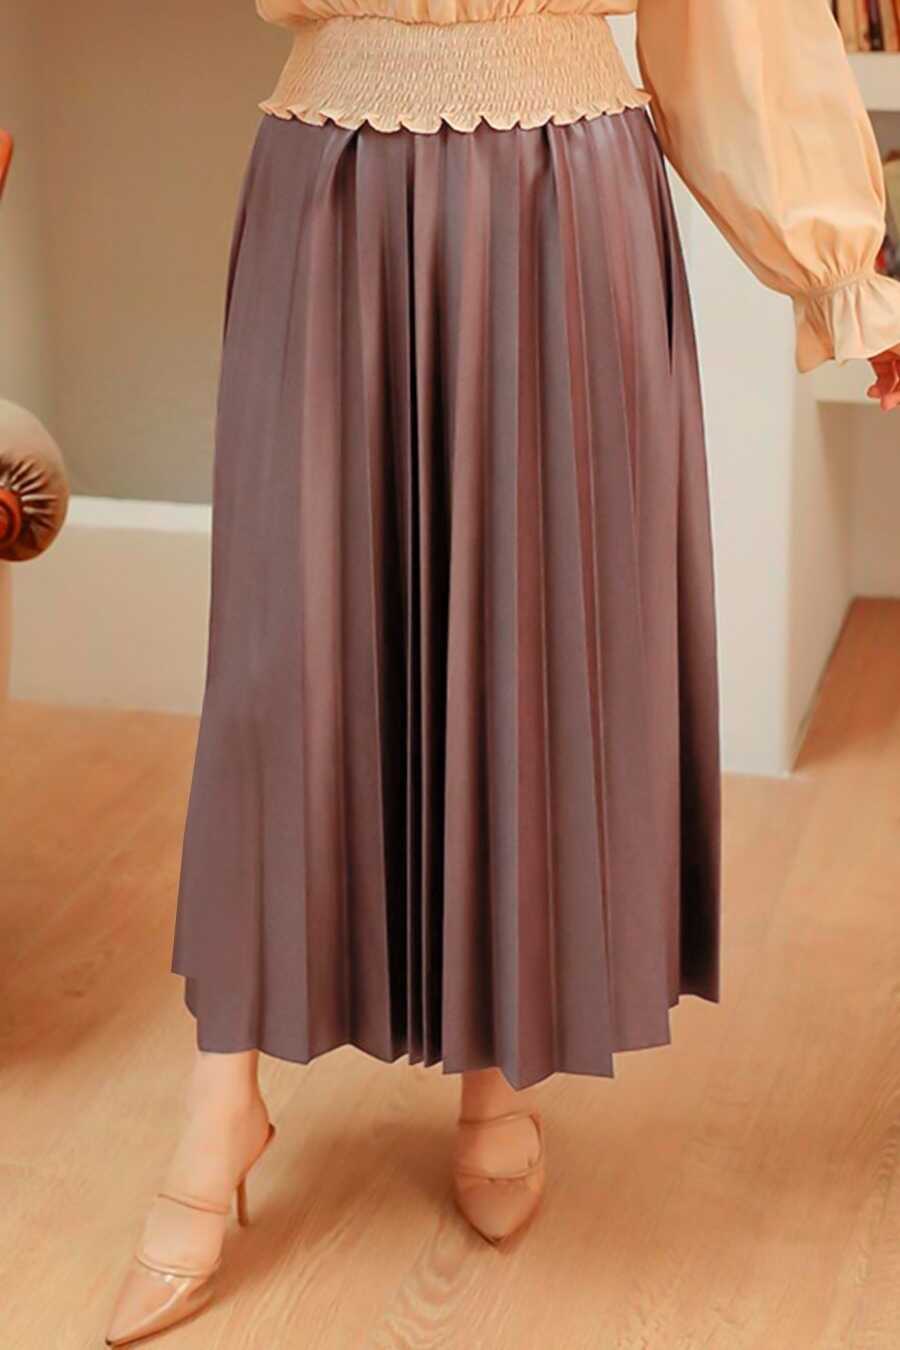 Neva Style - Dark Dusty Rose Hijab For Women Skirt 35151KGK